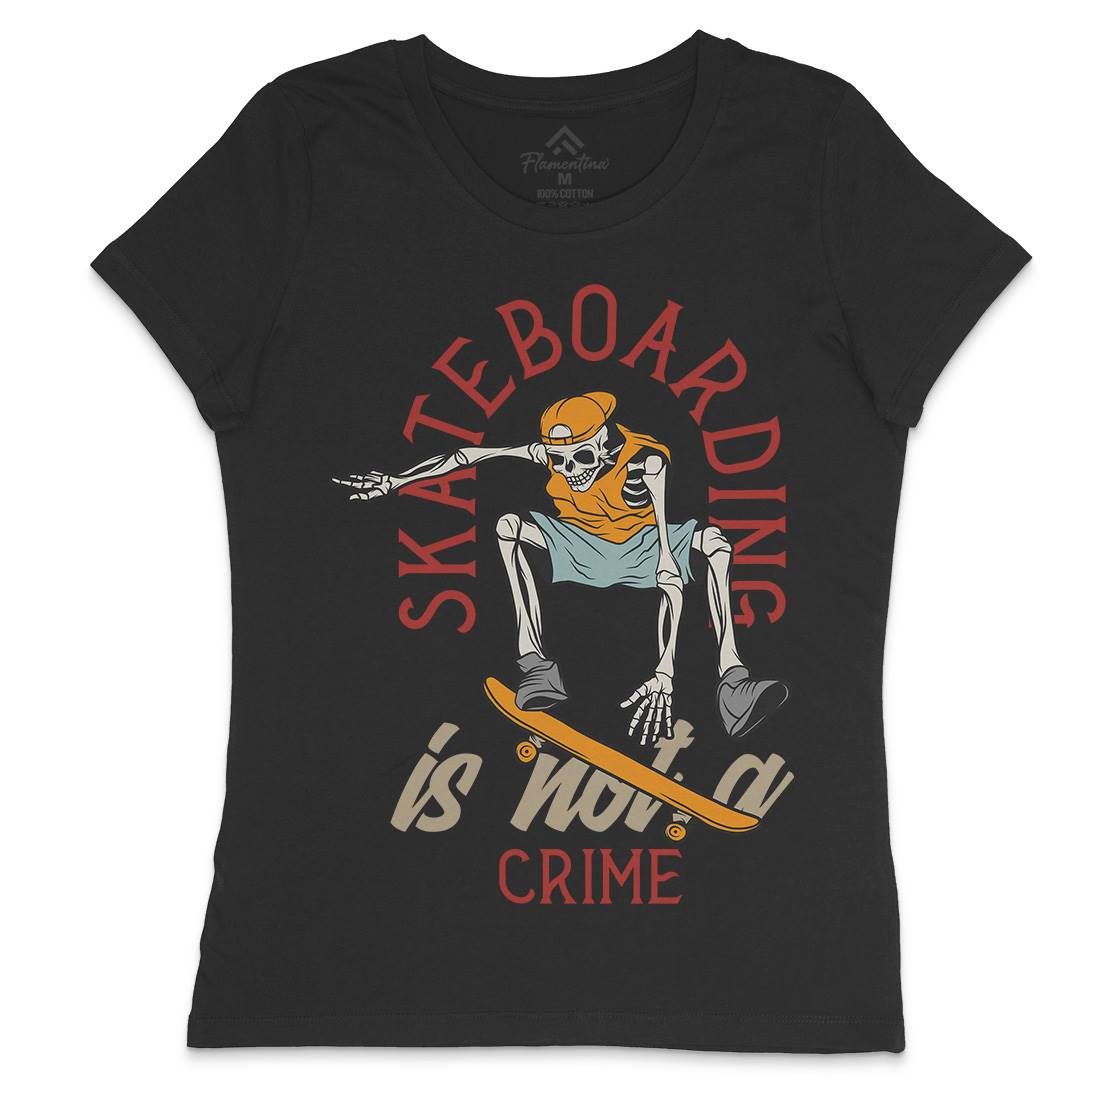 Skateboarding Crime Womens Crew Neck T-Shirt Skate D975